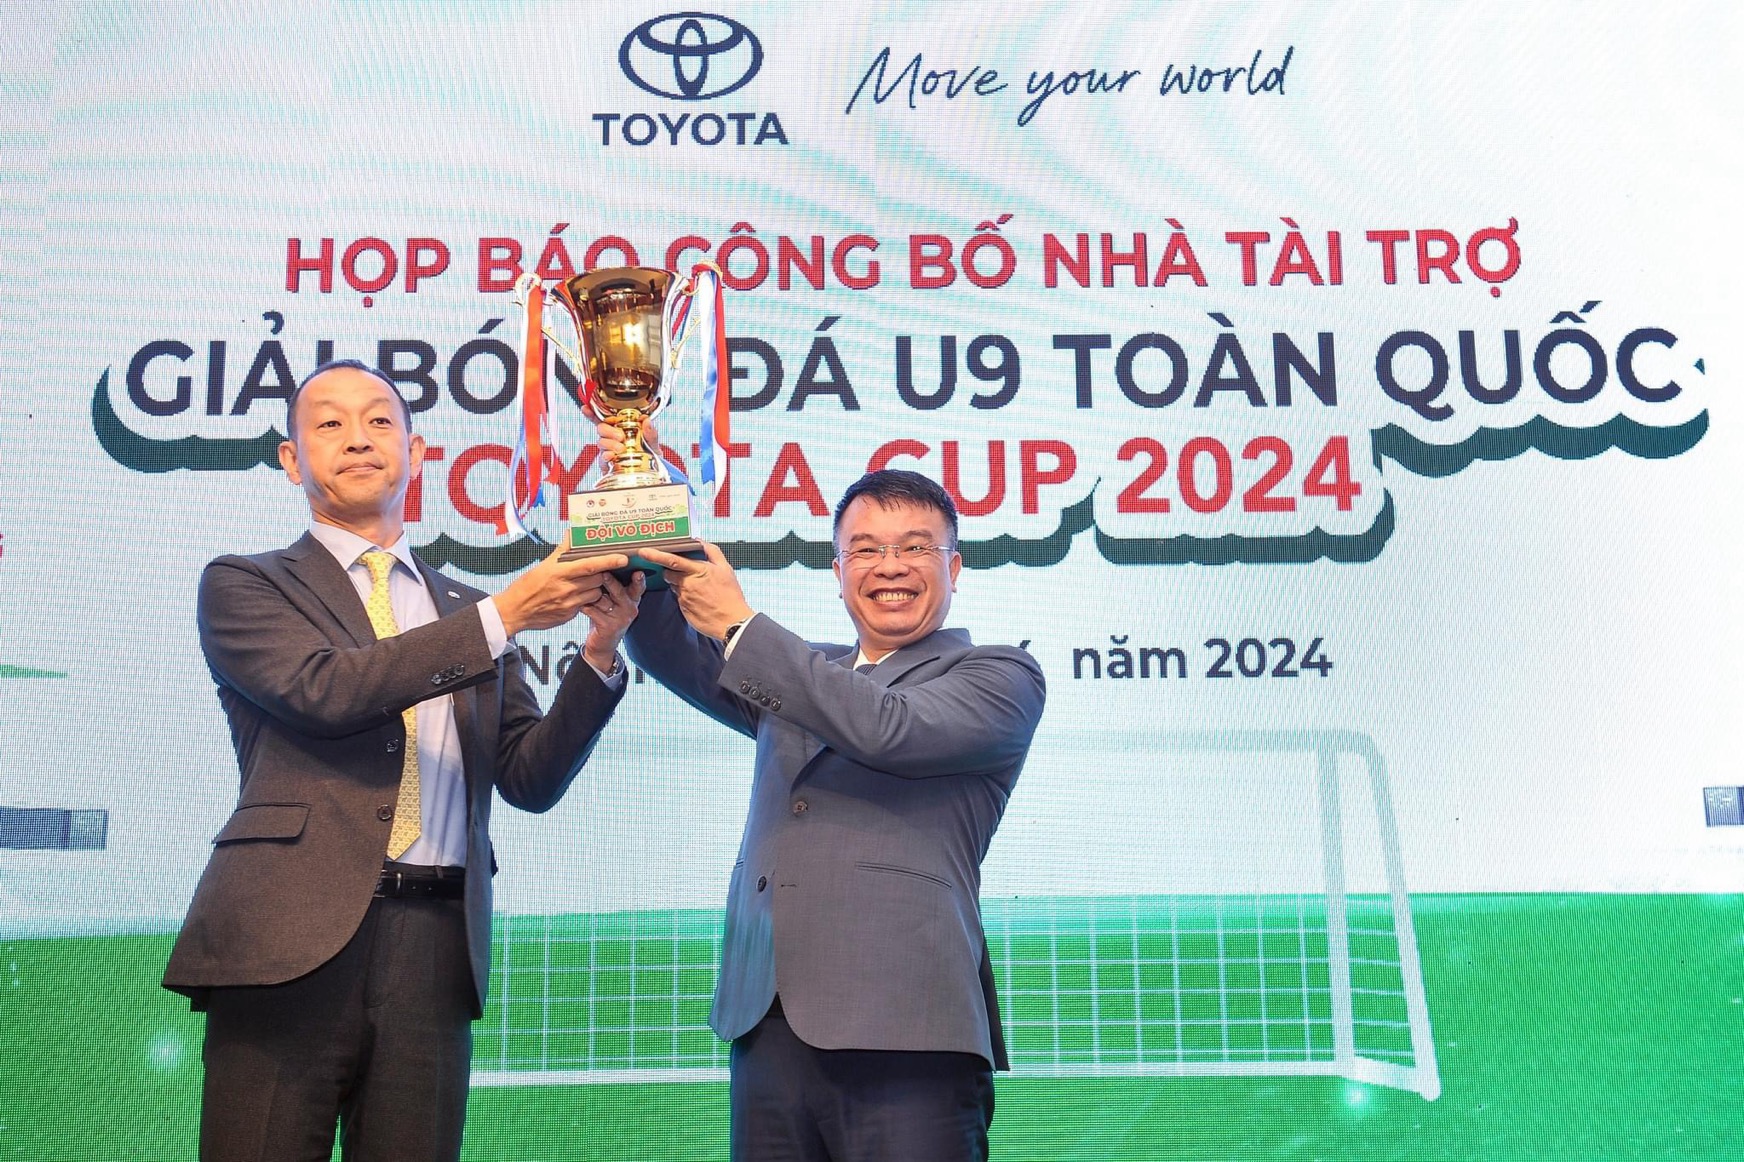 Khởi động Giải bóng đá U9 toàn quốc Toyota Cup 2024